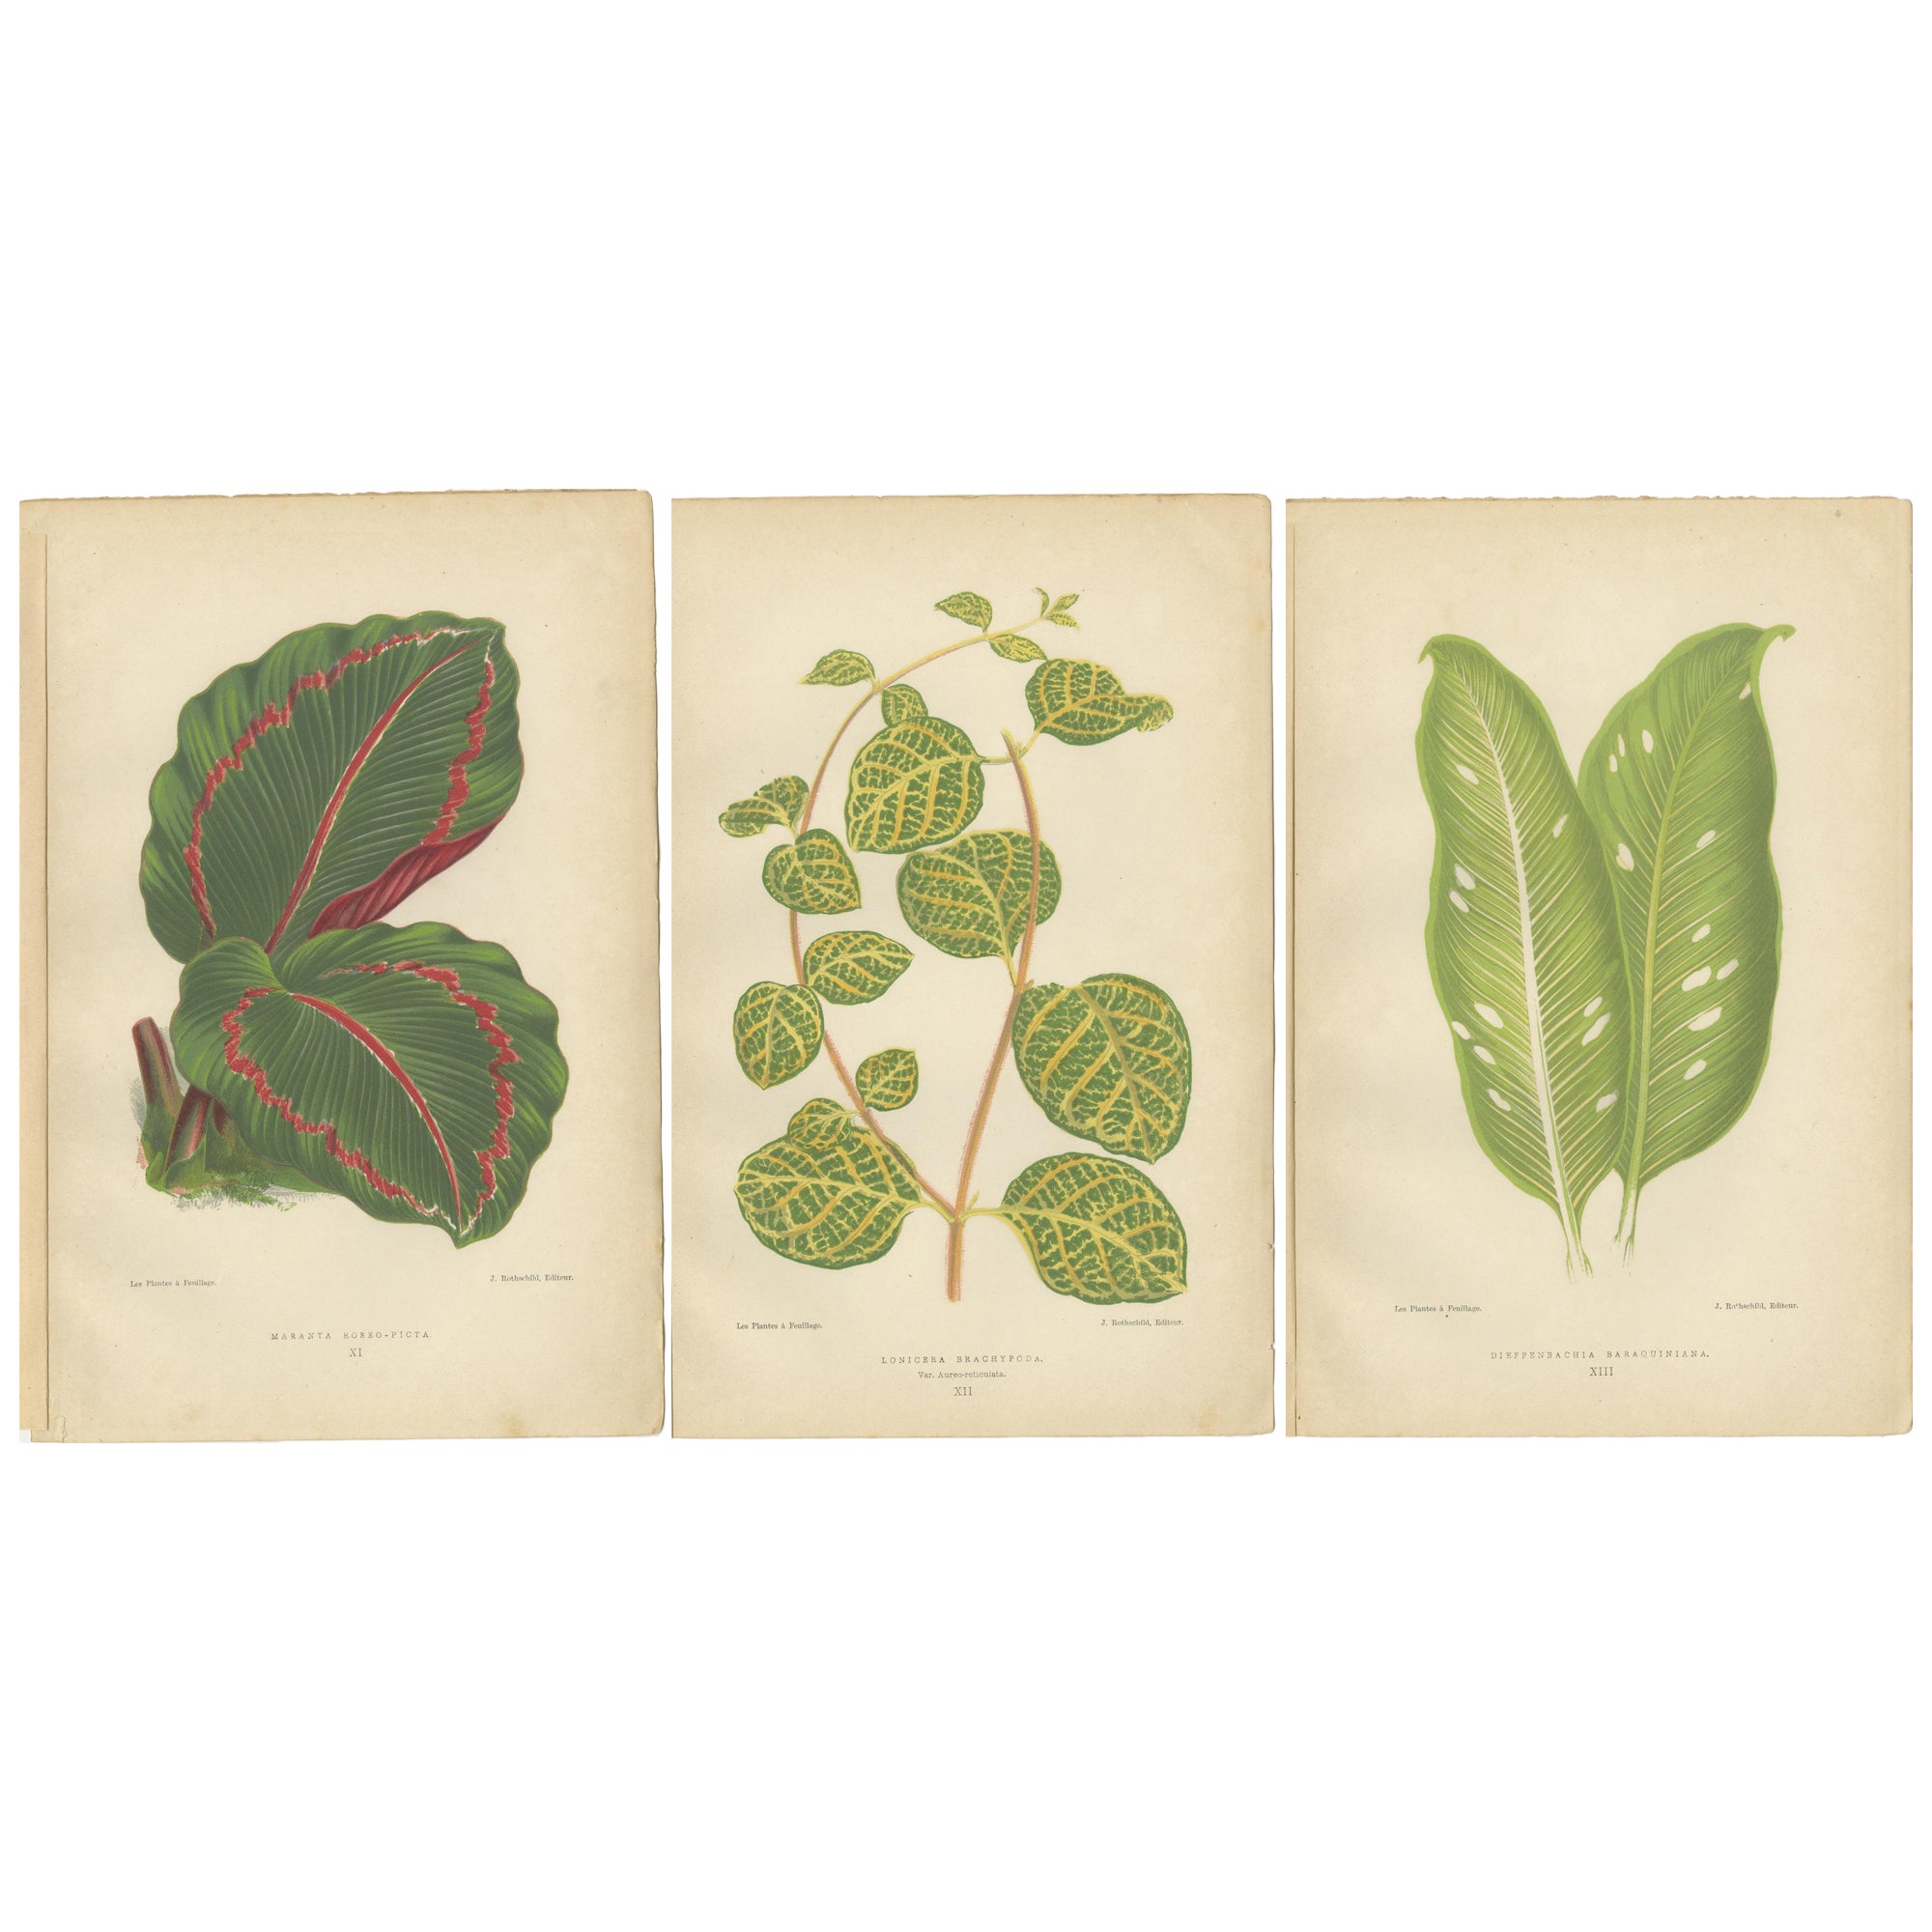 L'Elegance vibrante : Illustrations botaniques de feuillages de 1880 à Paris